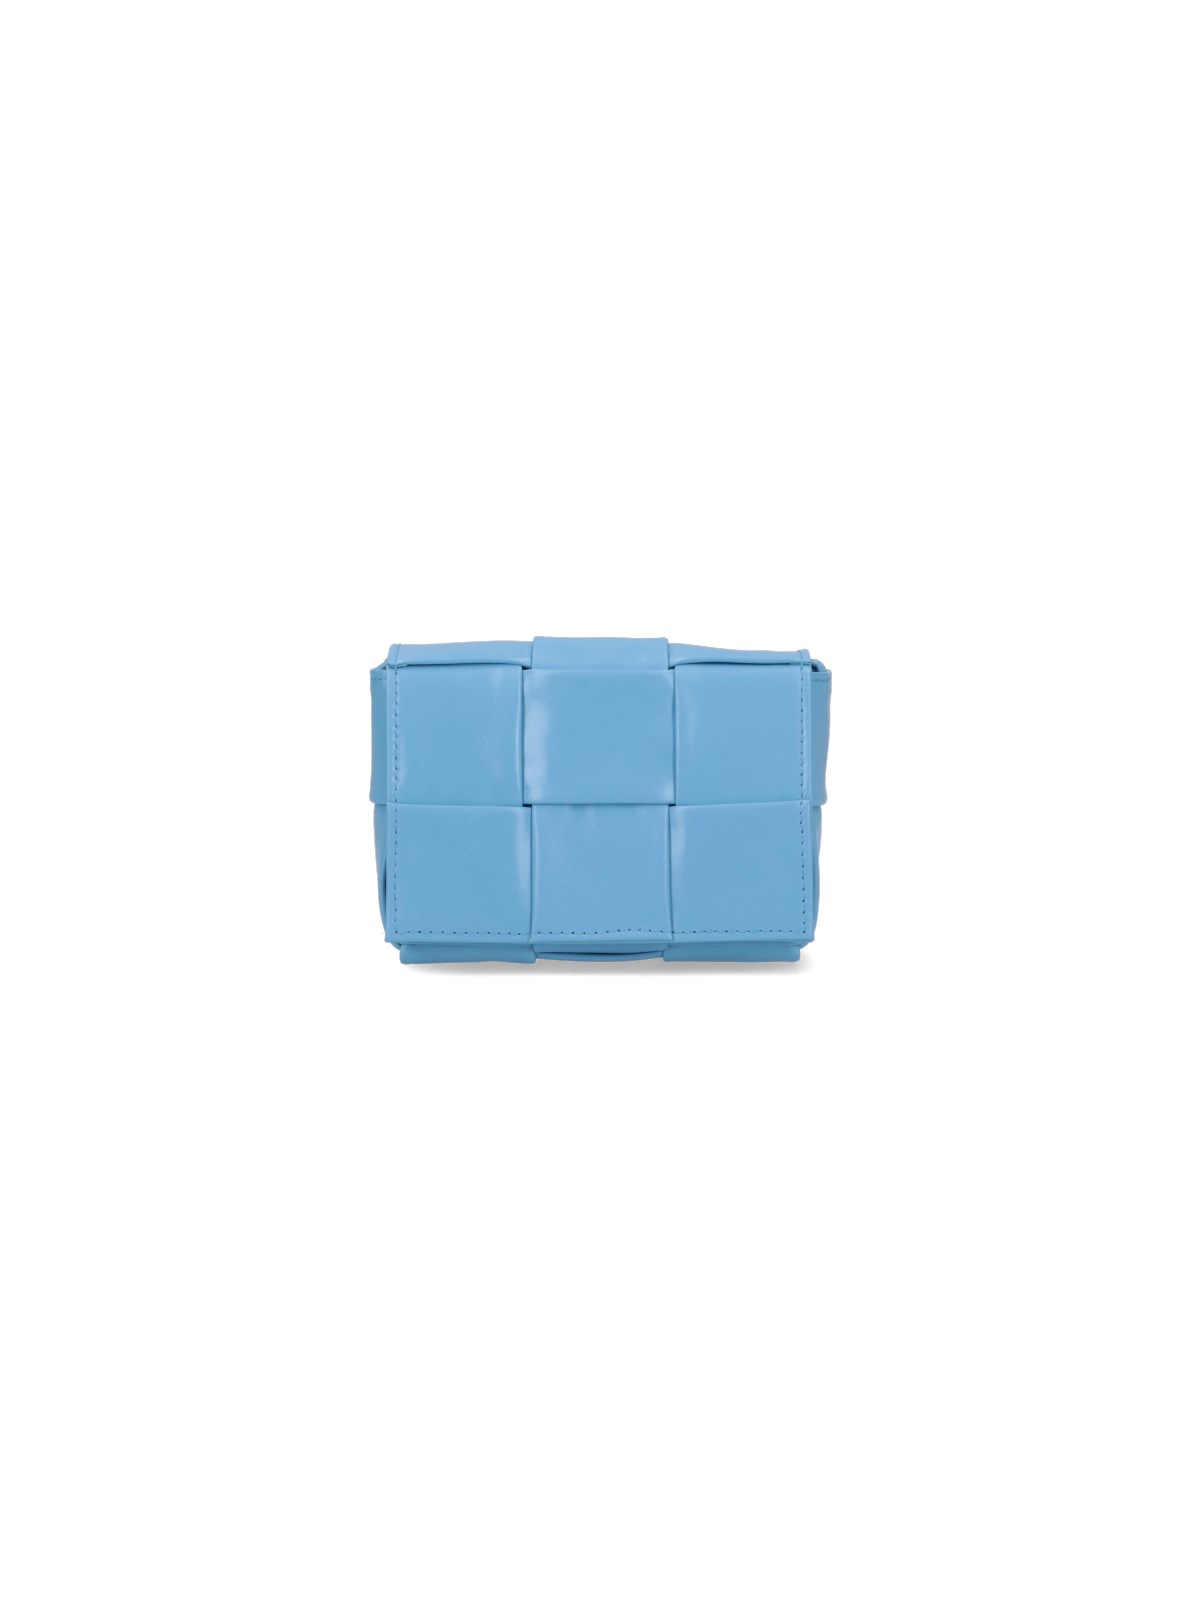 Bottega Veneta ‘candy Cassette' Bag In Light Blue